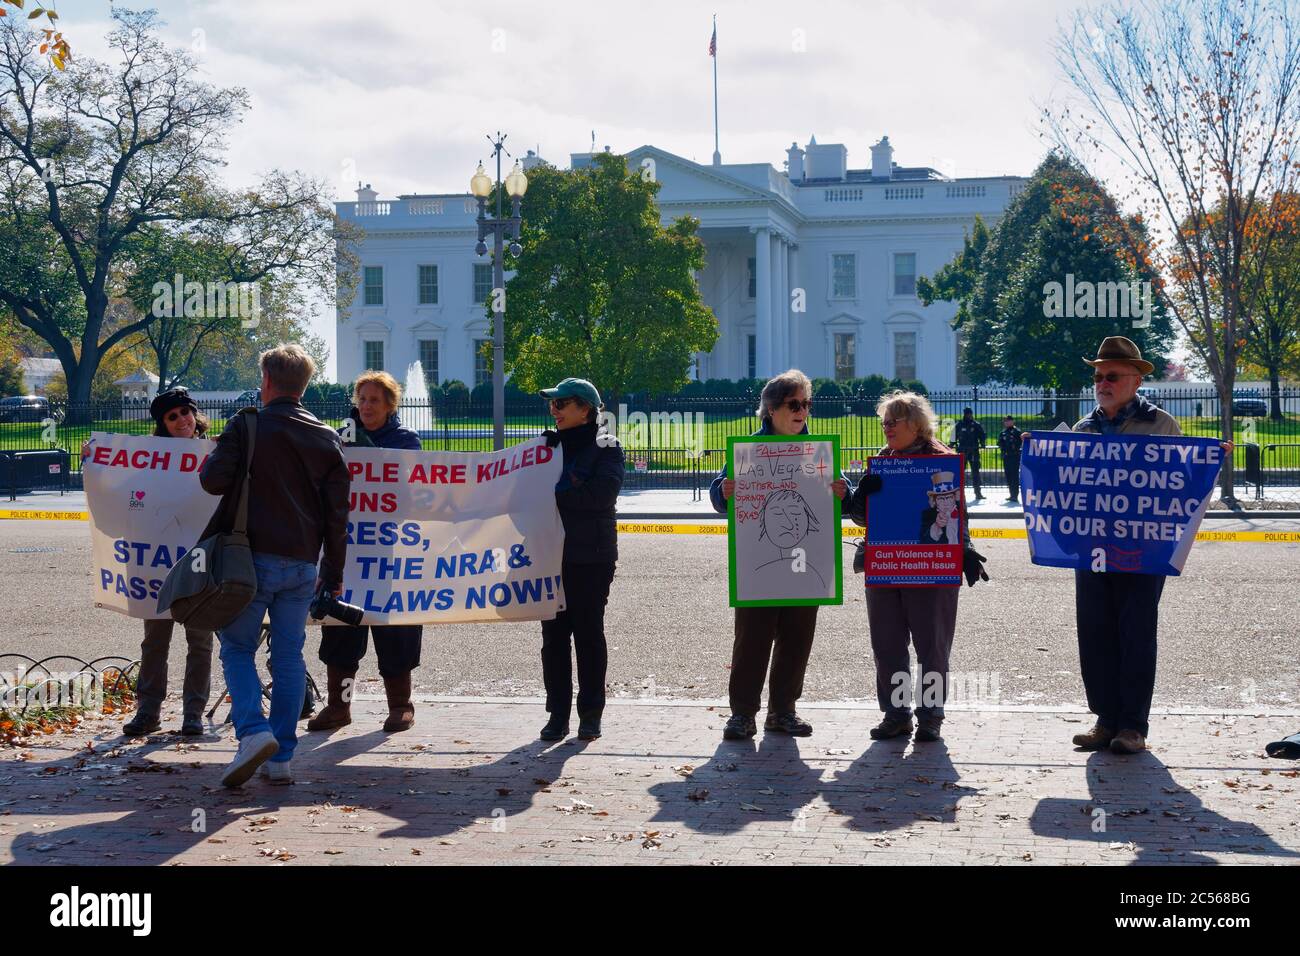 Gli attivisti sono davanti alla Casa Bianca, protestando contro la violenza sulle armi e chiedendo misure di controllo delle armi. Washington, DC, Stati Uniti. Foto Stock